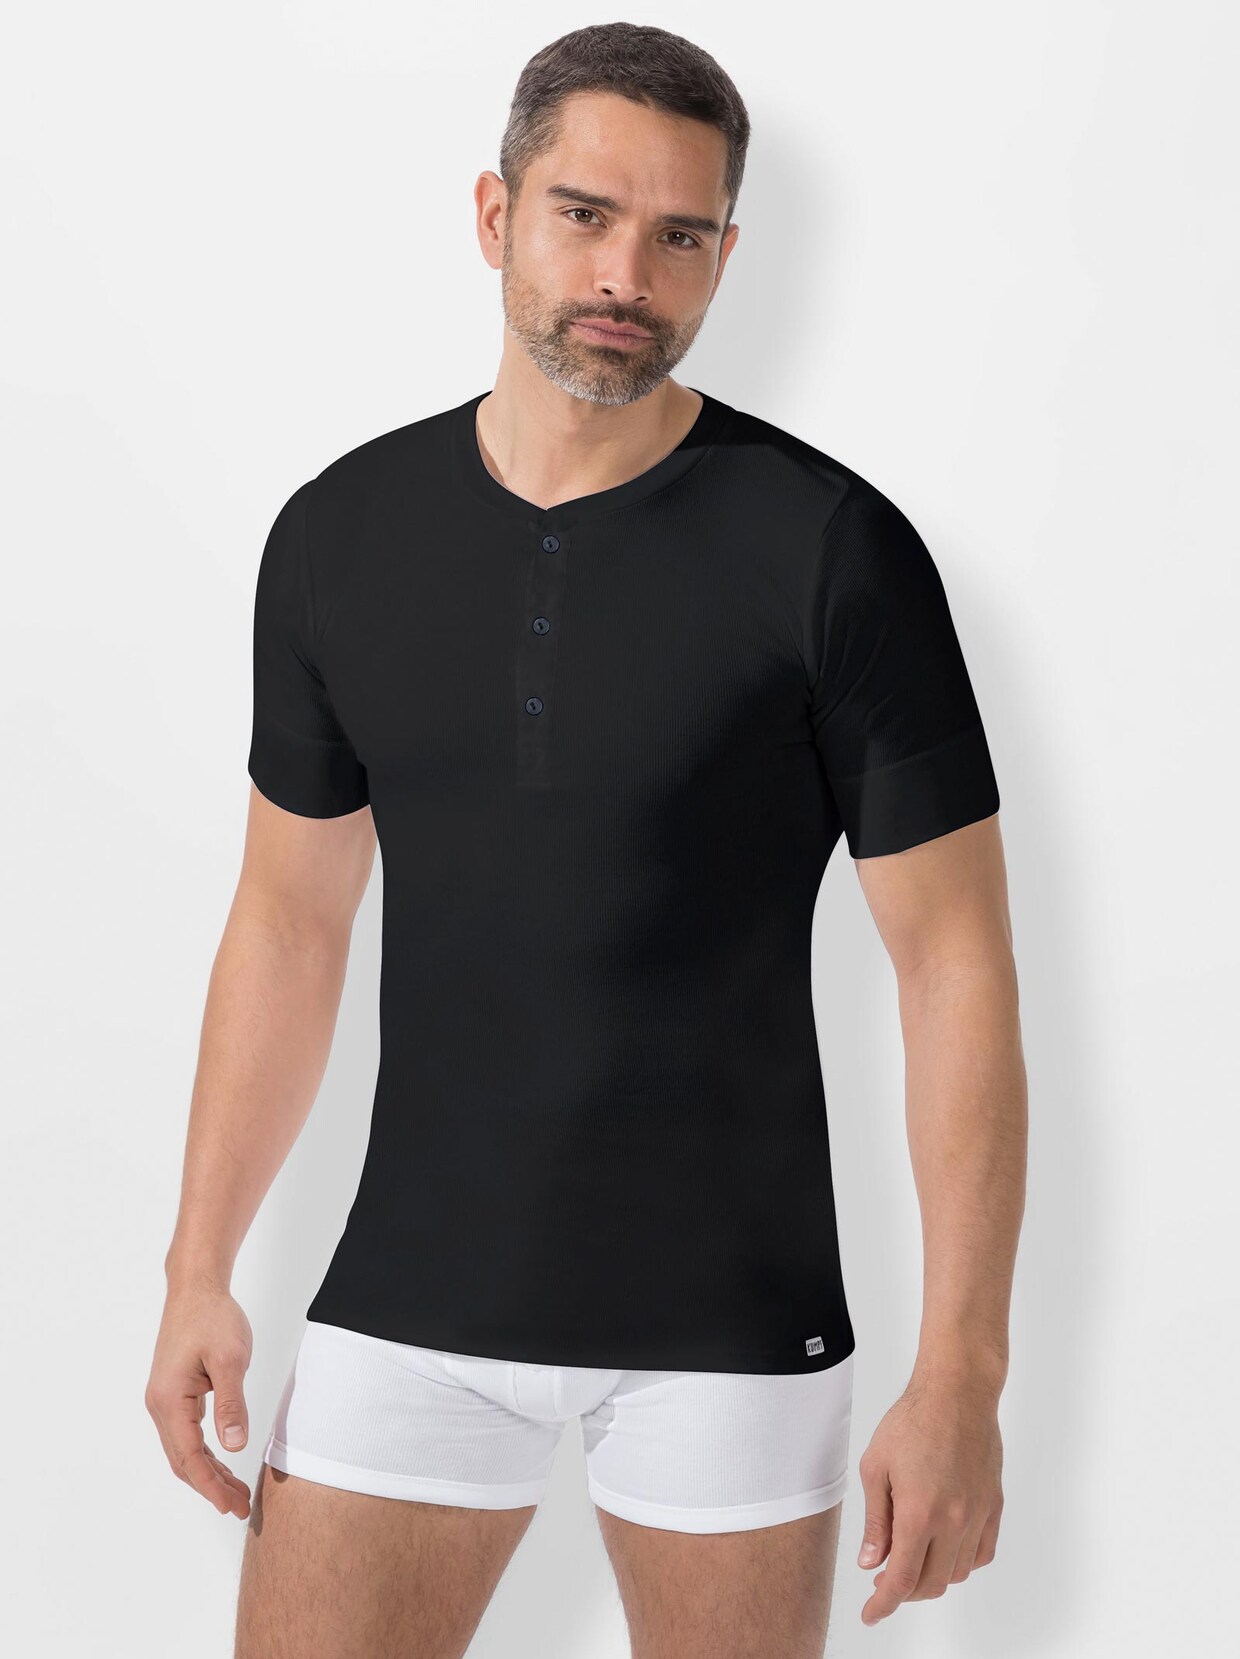 Kumpf Shirt - schwarz